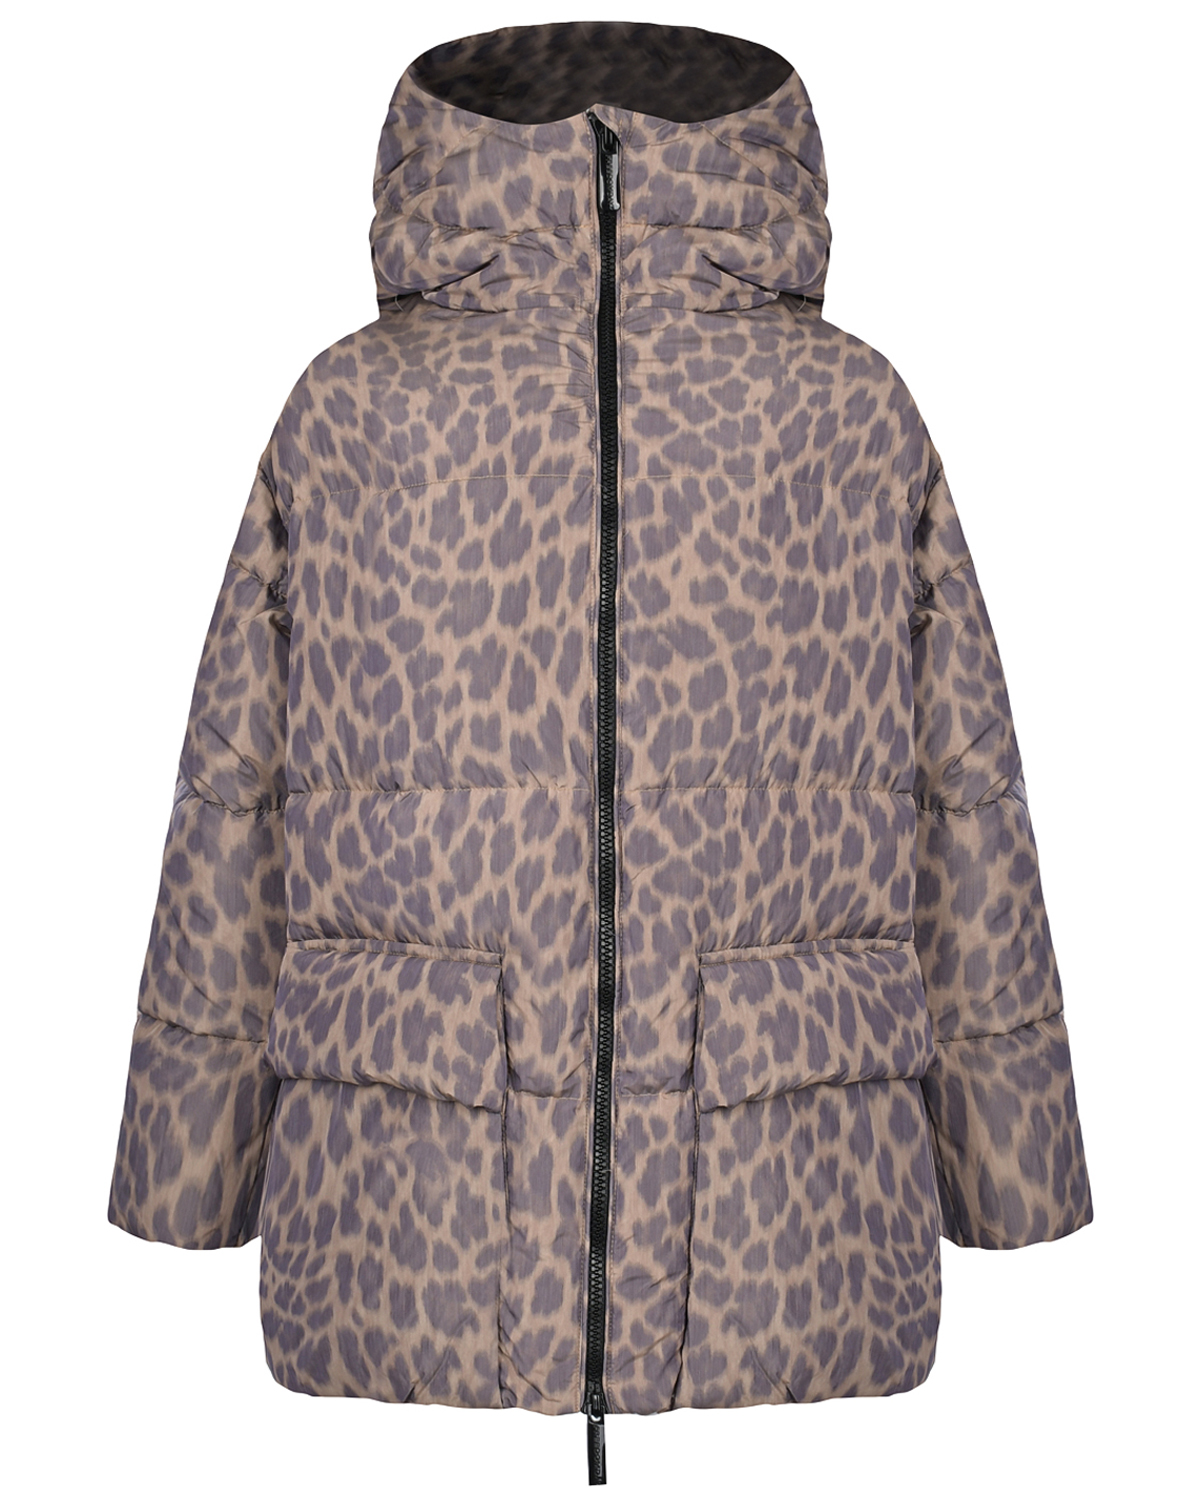 Пуховая куртка с леопардовым принтом Freedomday, размер 38, цвет бежевый - фото 1